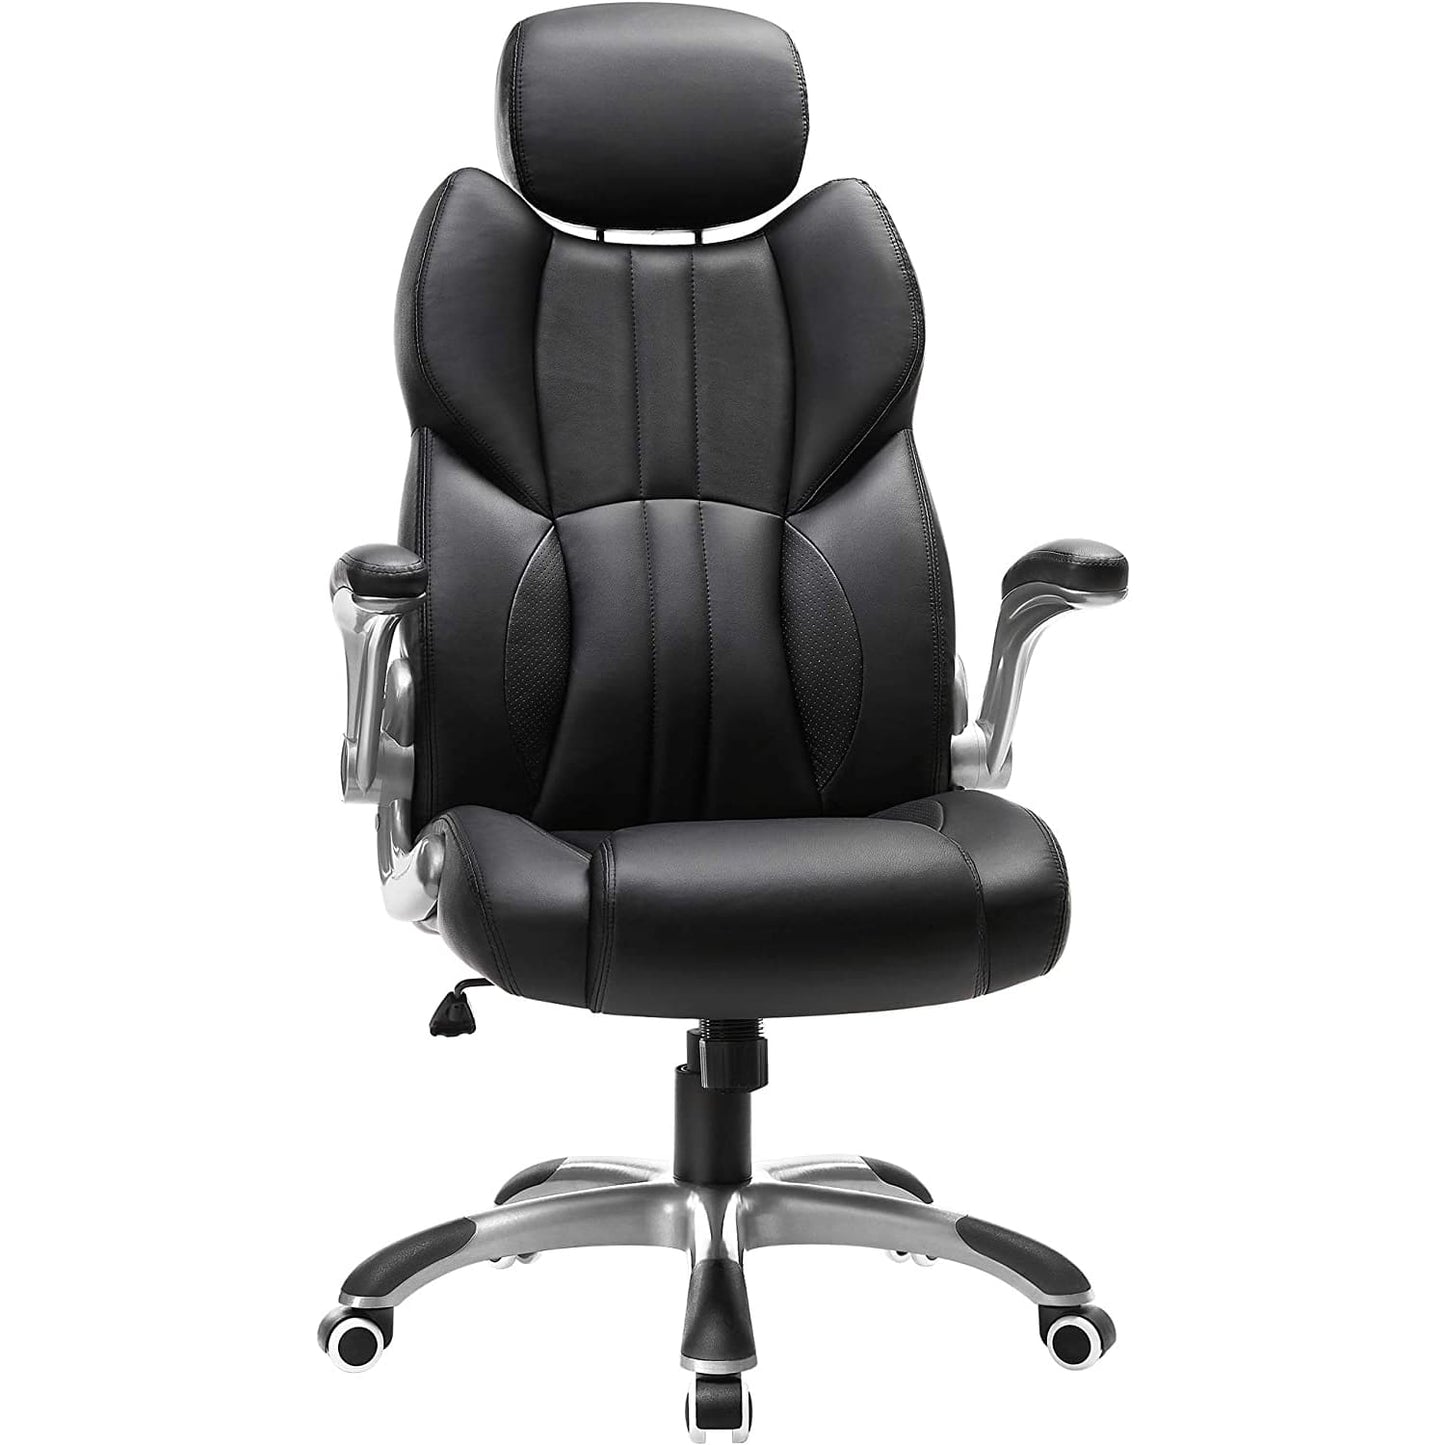  SONGMICS - Silla gaming, silla de oficina, piel sintética. Cuerpo duradero, soporta hasta 150 kg, Las ruedas no rayan